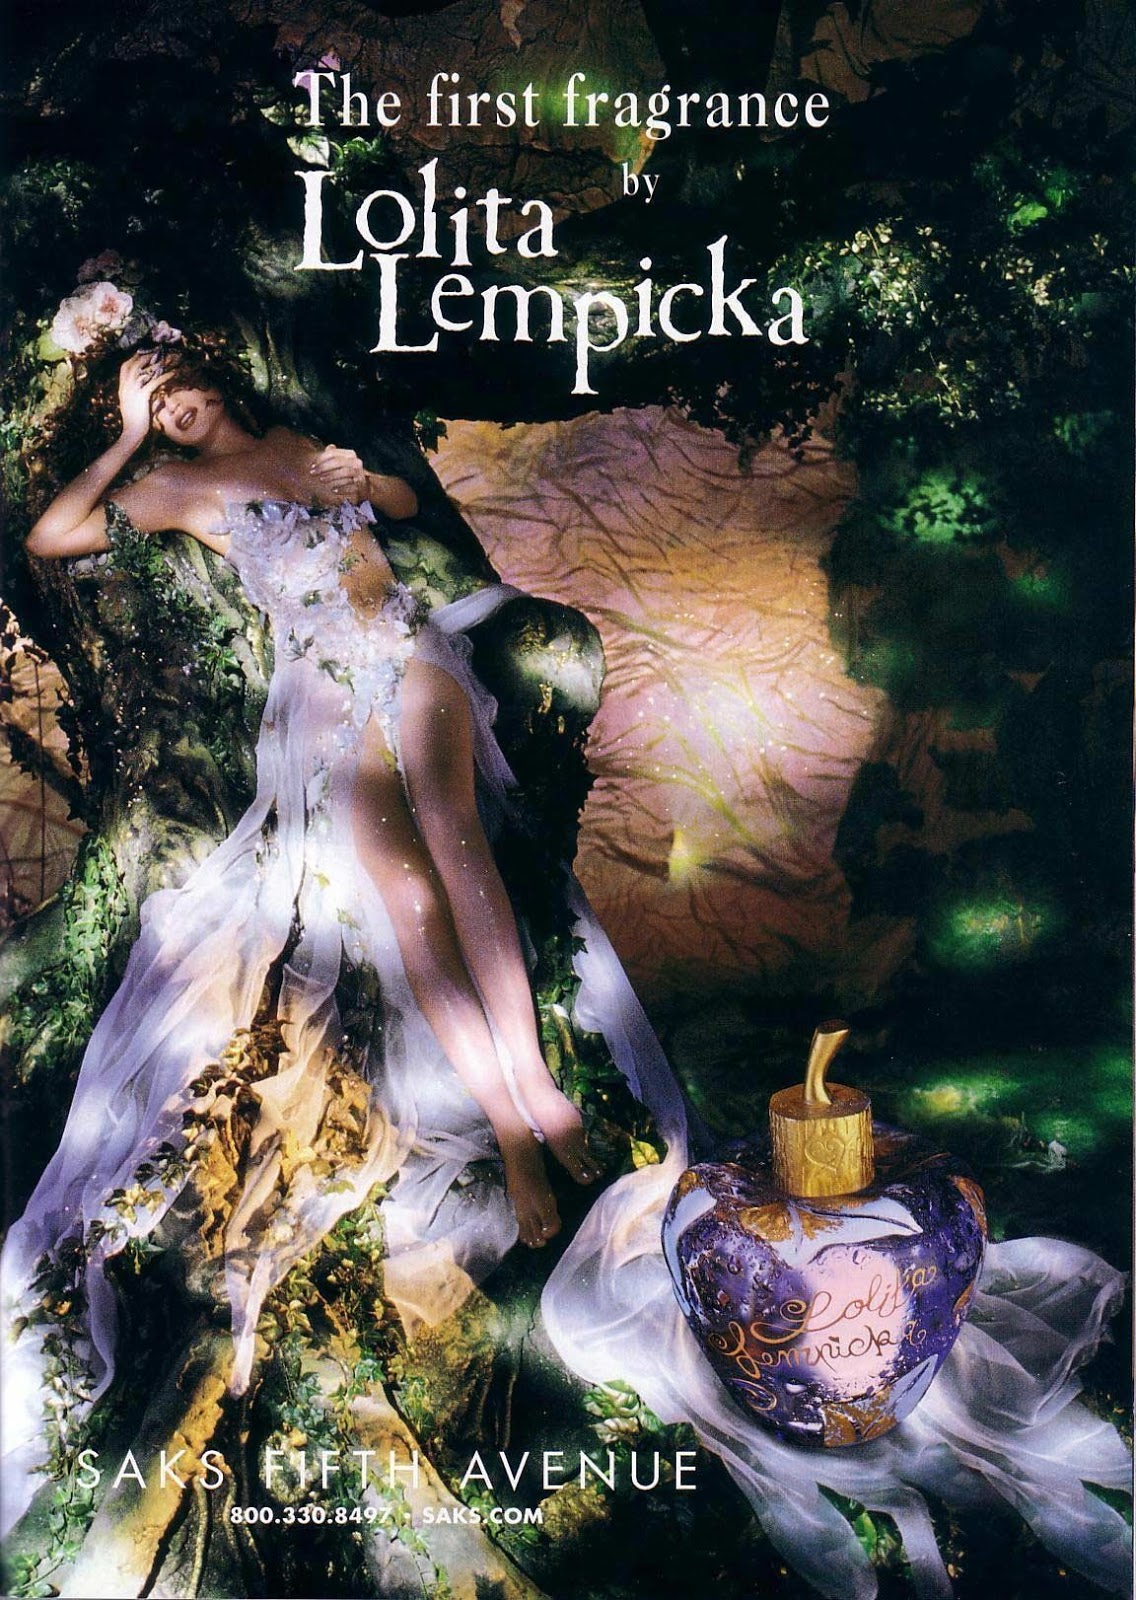 Lolita Lempicka by Lolita Lempicka